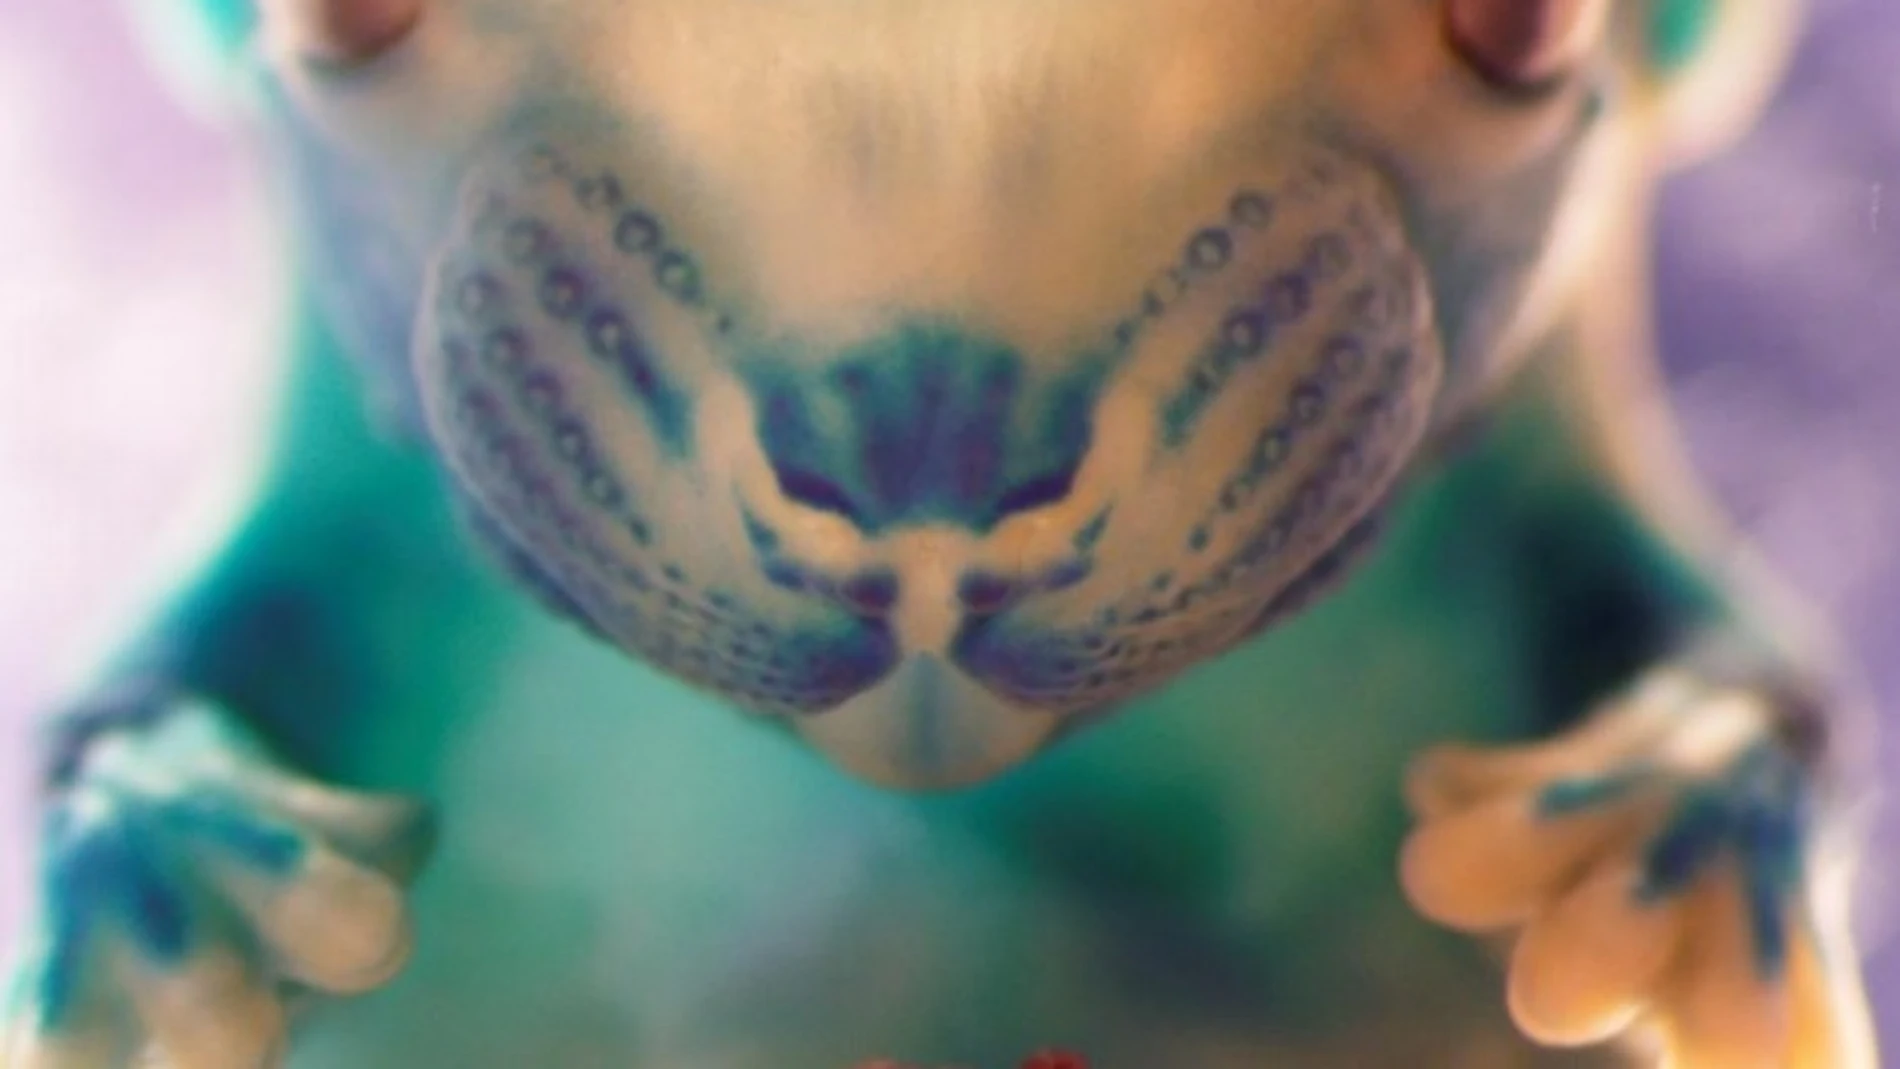 Titulada "El abrazo", esta fotografía nos muestra a un embrión de ratón de 14 días de desarrollo